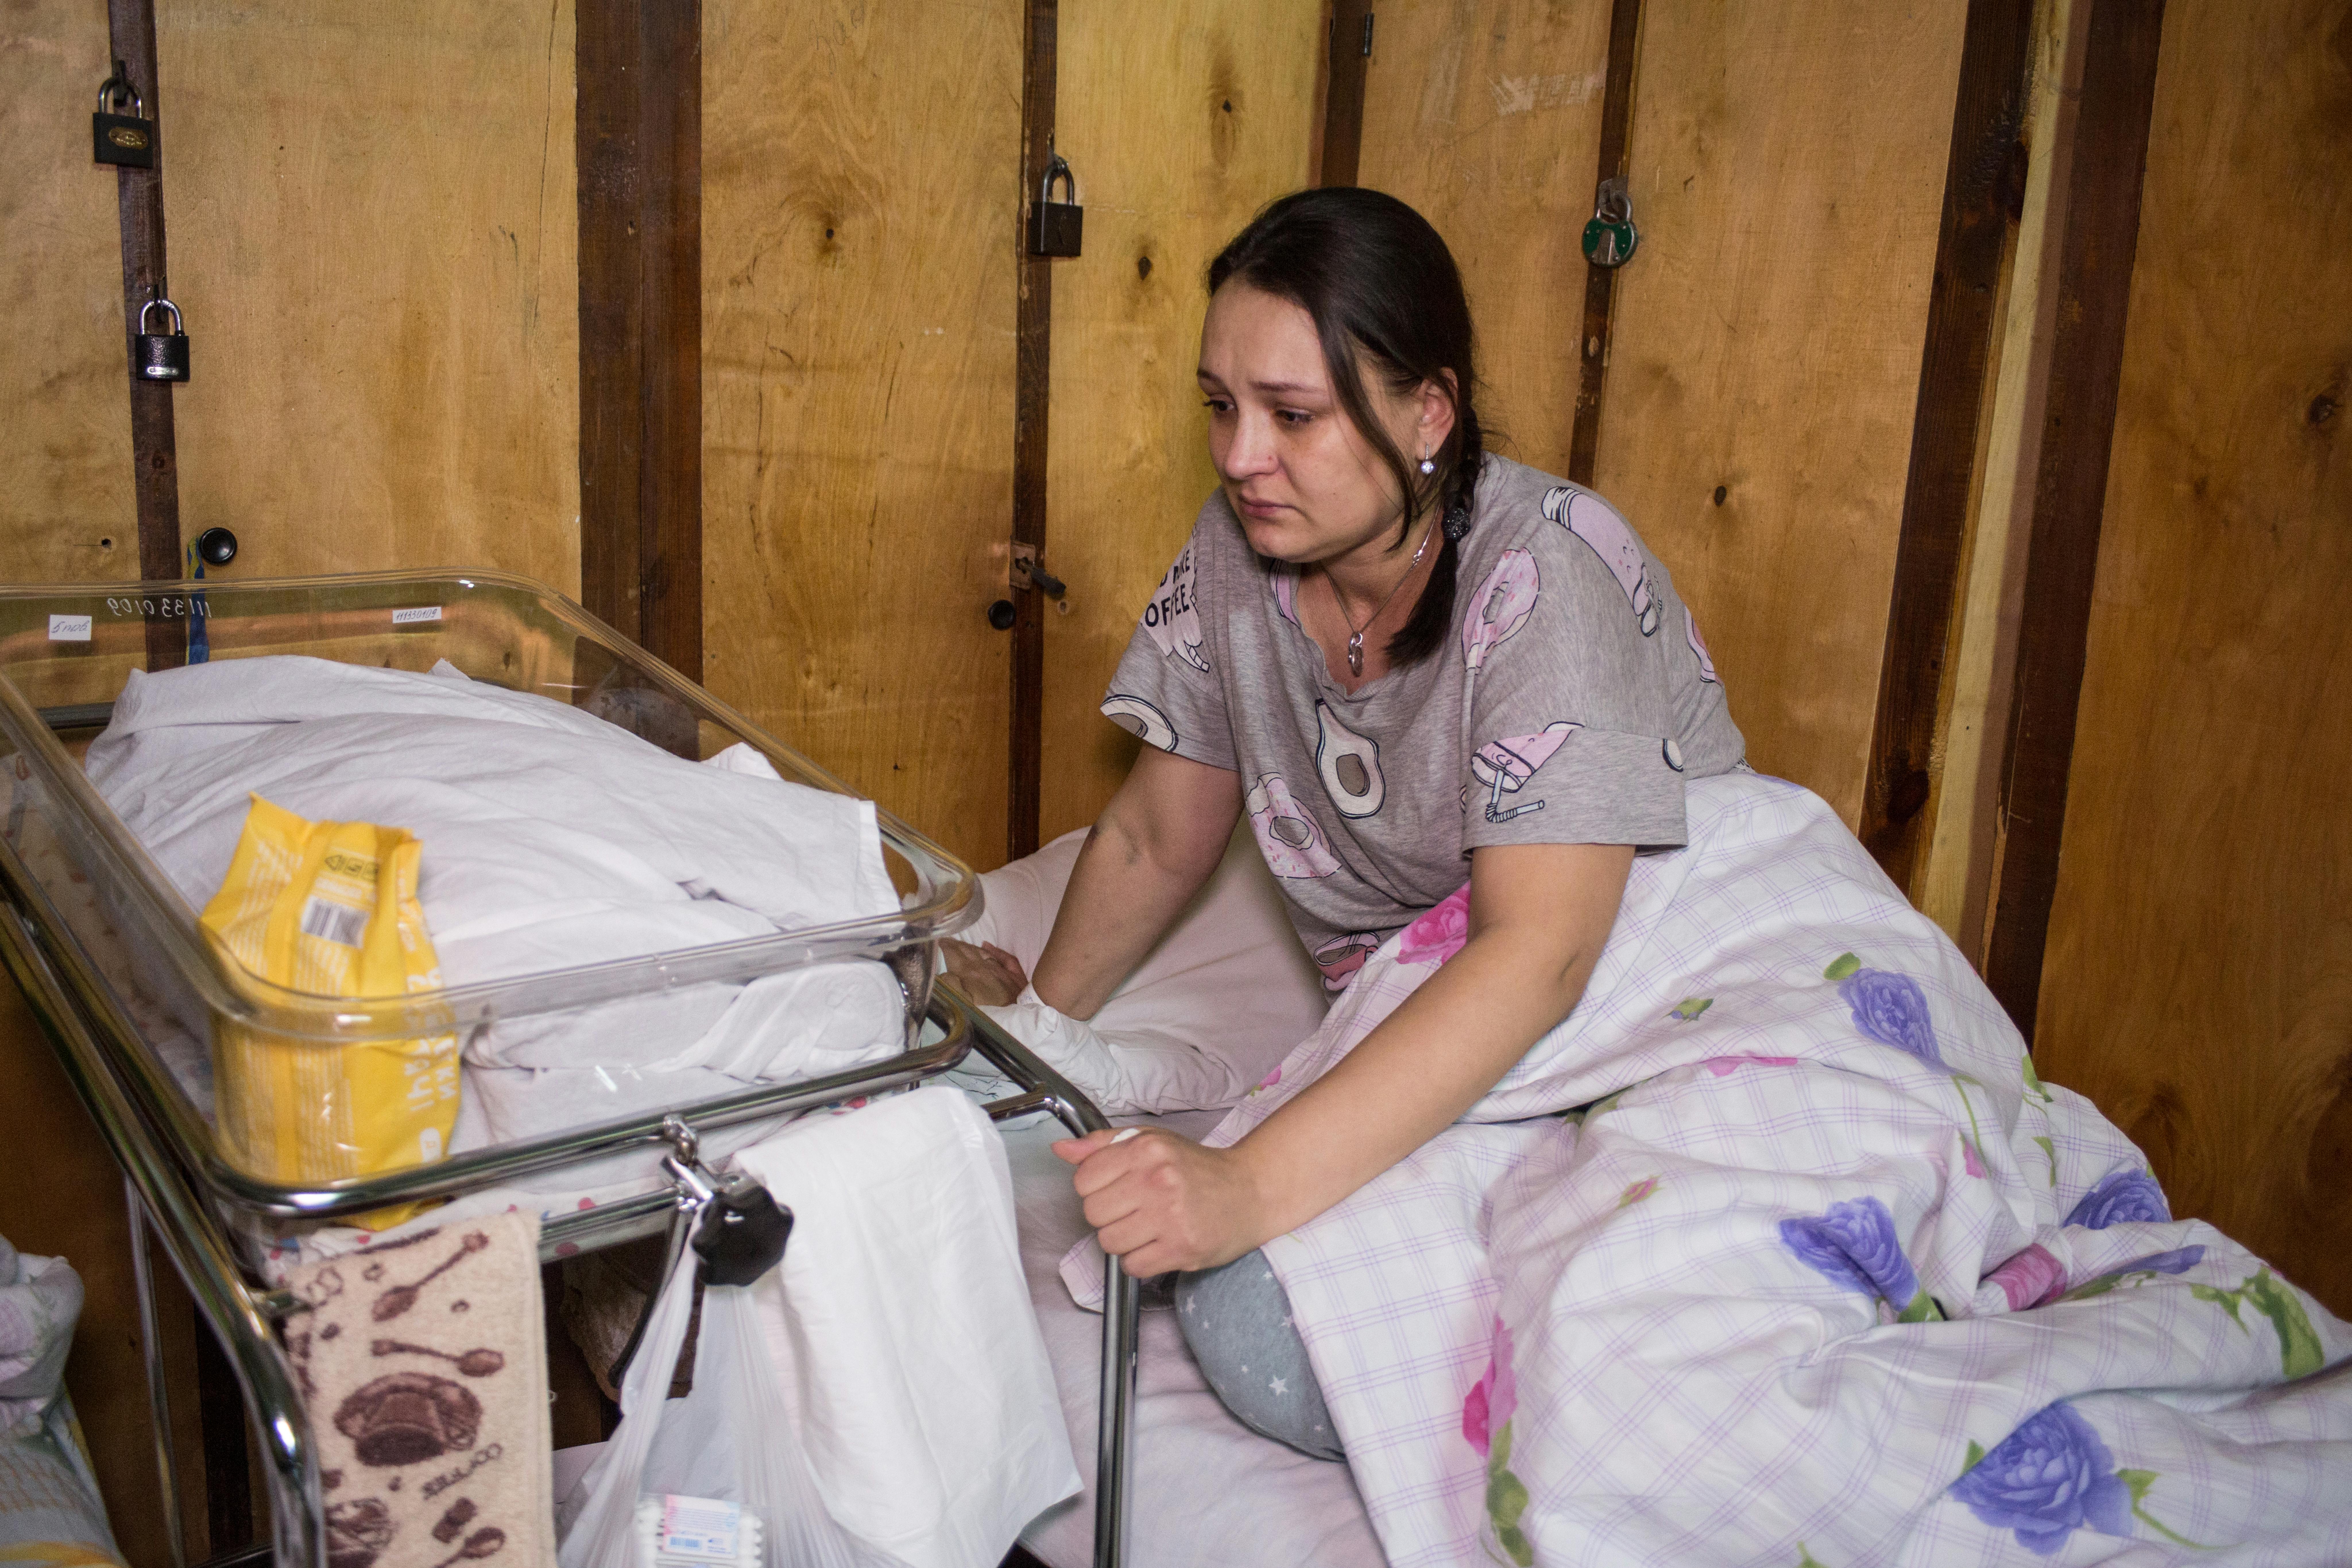 Una mamma visibilmente provata culla il suo bambino. Da quando il conflitto si è intensificato, le famiglie si sono rifugiate sottoterra, tagliate fuori dai servizi di base. Ospedali e reparti di maternità hanno spostato i loro pazienti negli scantinati o stanno operando sotto il fuoco incrociato. La situazione è drammatica per i reparti maternità in città come Kiev, Odesa e Kharkiv, dove i combattimenti continuano a colpire civili e ospedali.